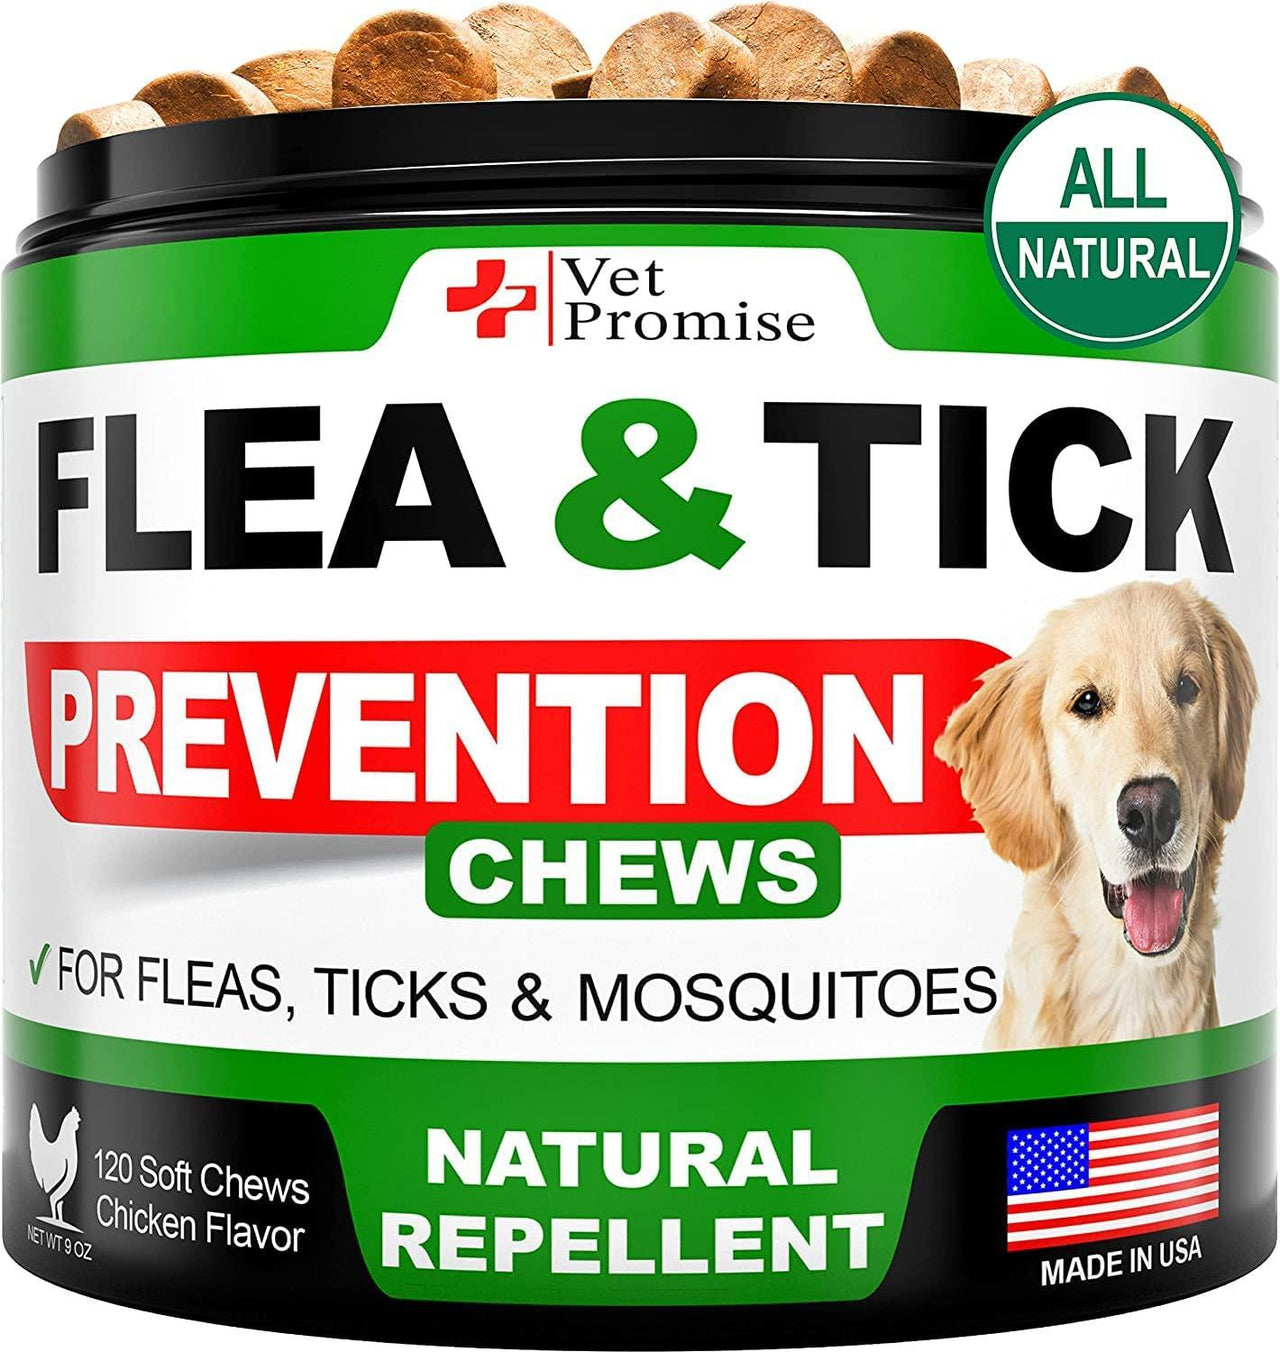 Flea & tick Chews for Dogs - Mercantile Mountain